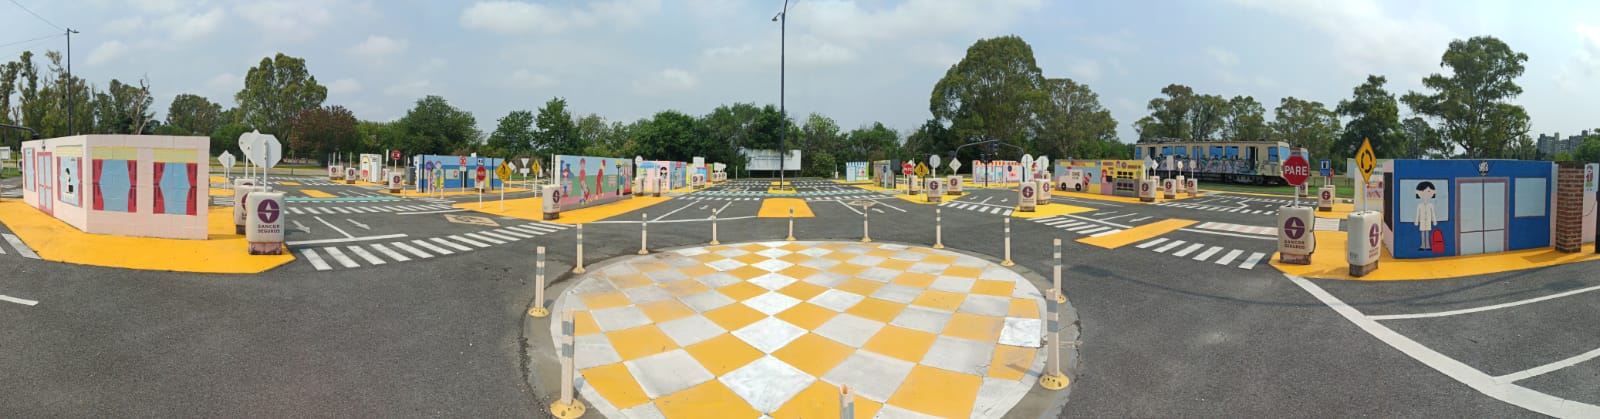 parque vial infantil